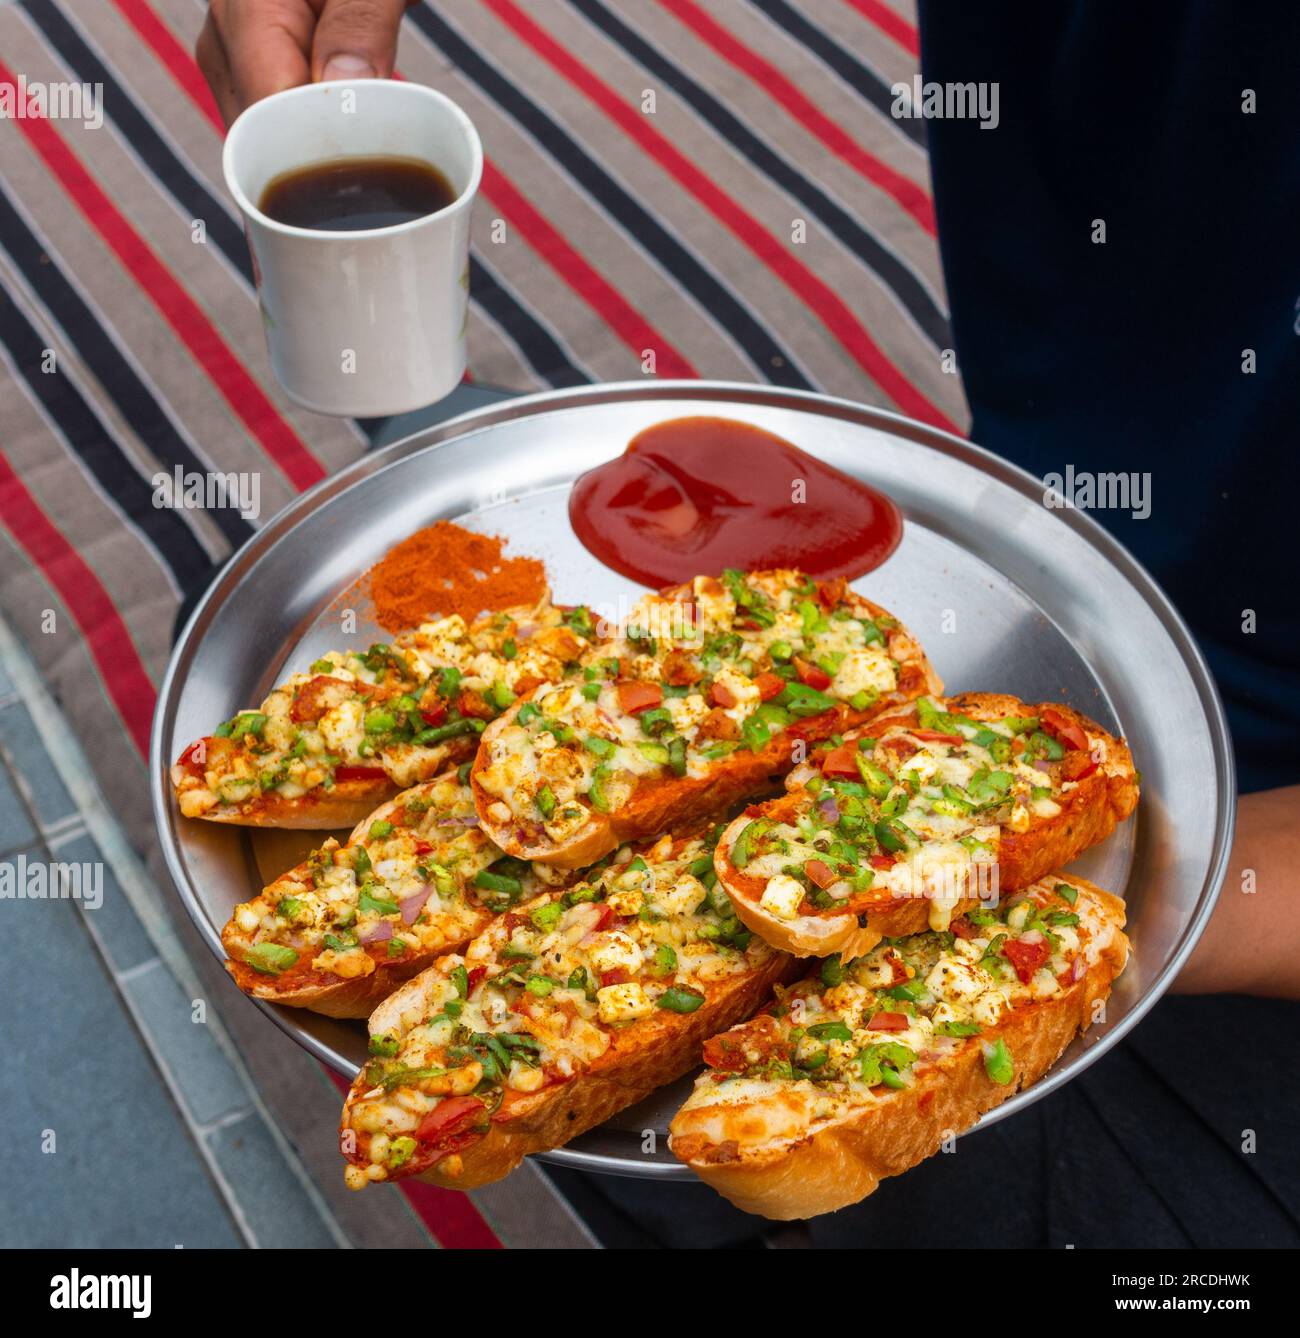 Hände mit schwarzem Kaffee und hausgemachtem Ingwer-Knoblauchbrot mit Käse und indischen Kräutern. Indien Stockfoto